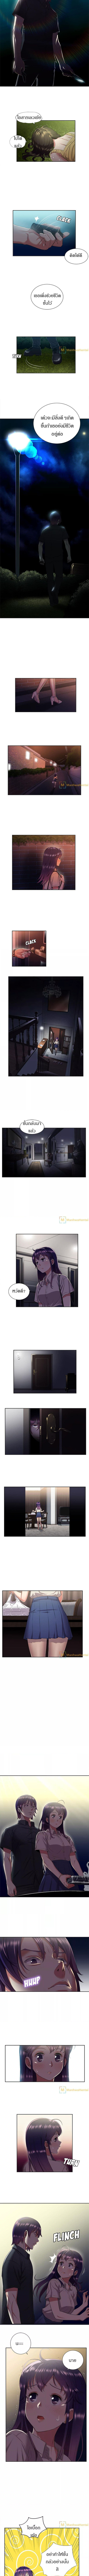 Yuri’s Part Time Job 17 2